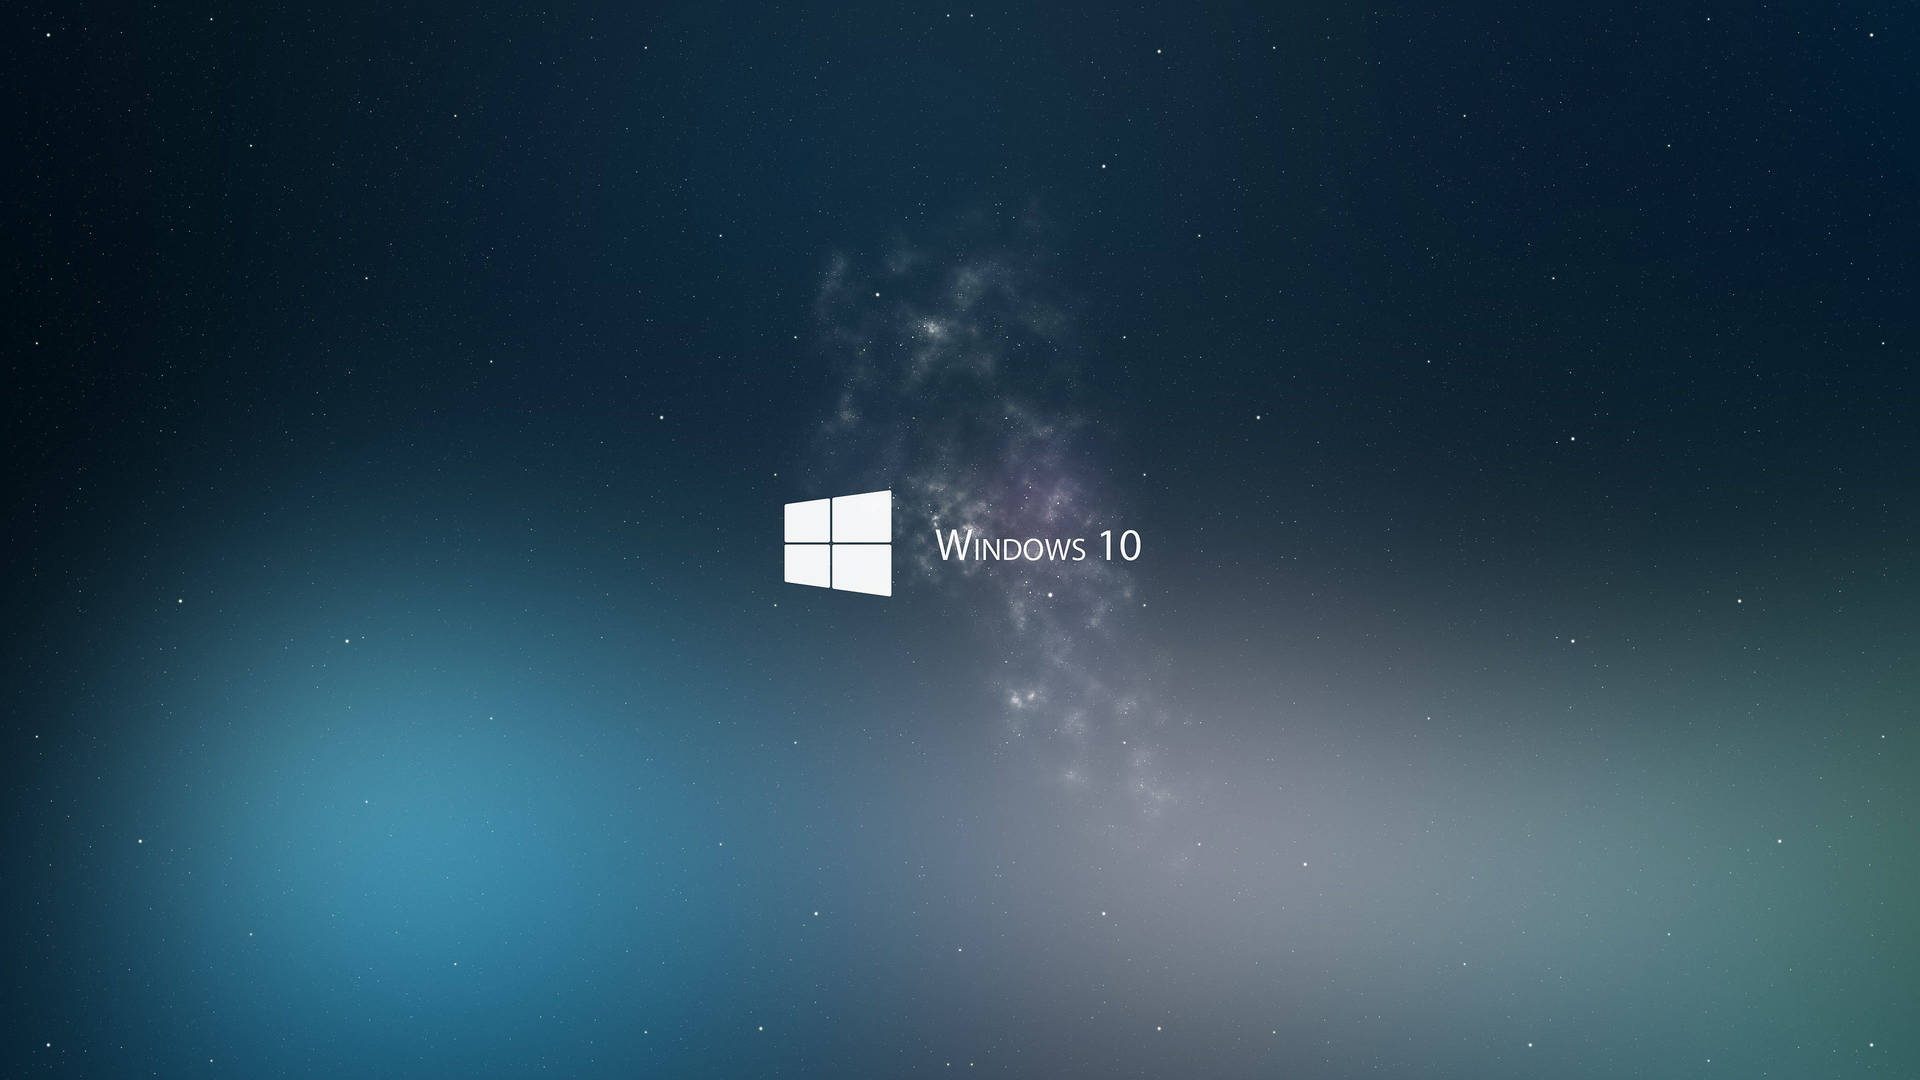 Windows 10 logo in white 4k wallpaper.